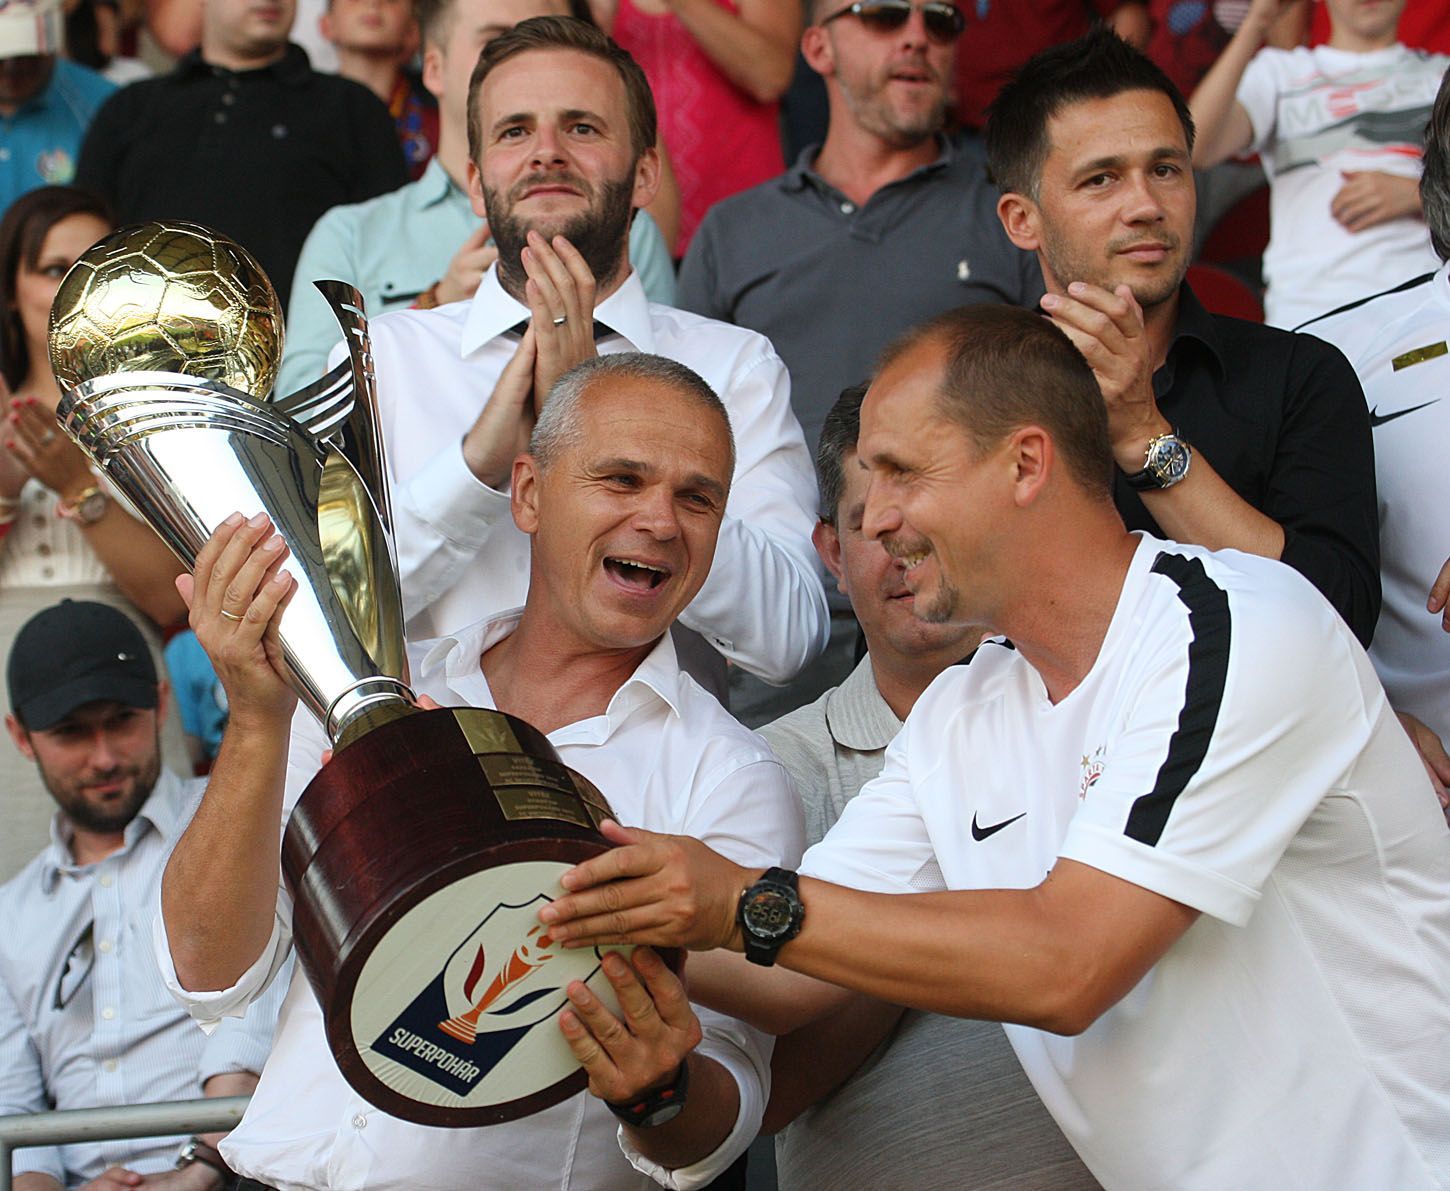 Superpohár 2014, Sparta-Plzeň: Sparta s pohárem (Vítězslav Lavička a  Zdeněk Svoboda)